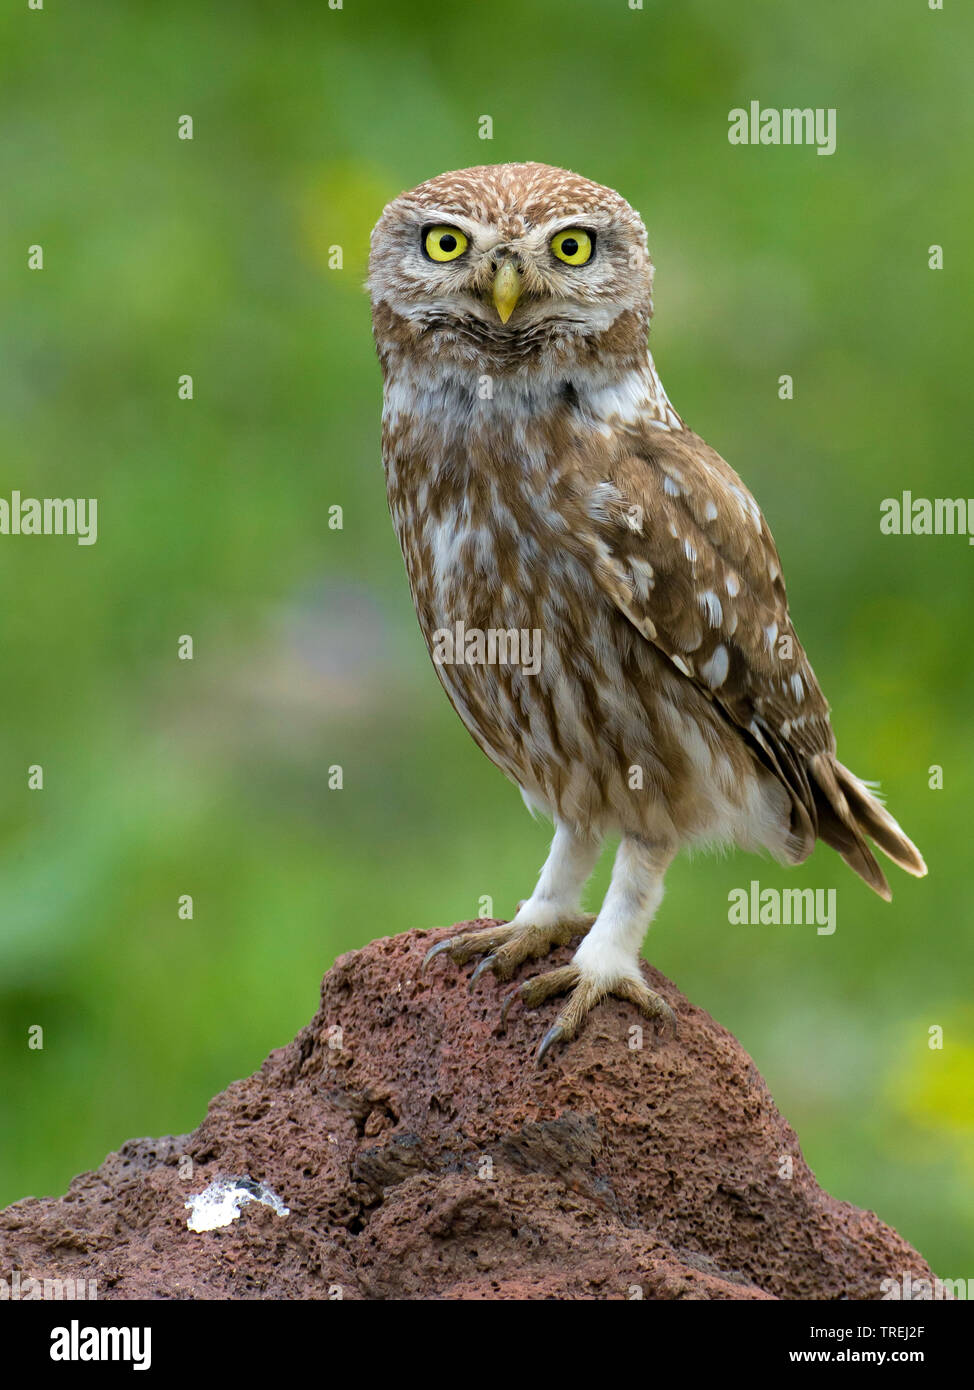 South-east European little owl (Athene noctua indigena, Athene indigena), sitting on the ground, Anatolia, East Anatolia Stock Photo